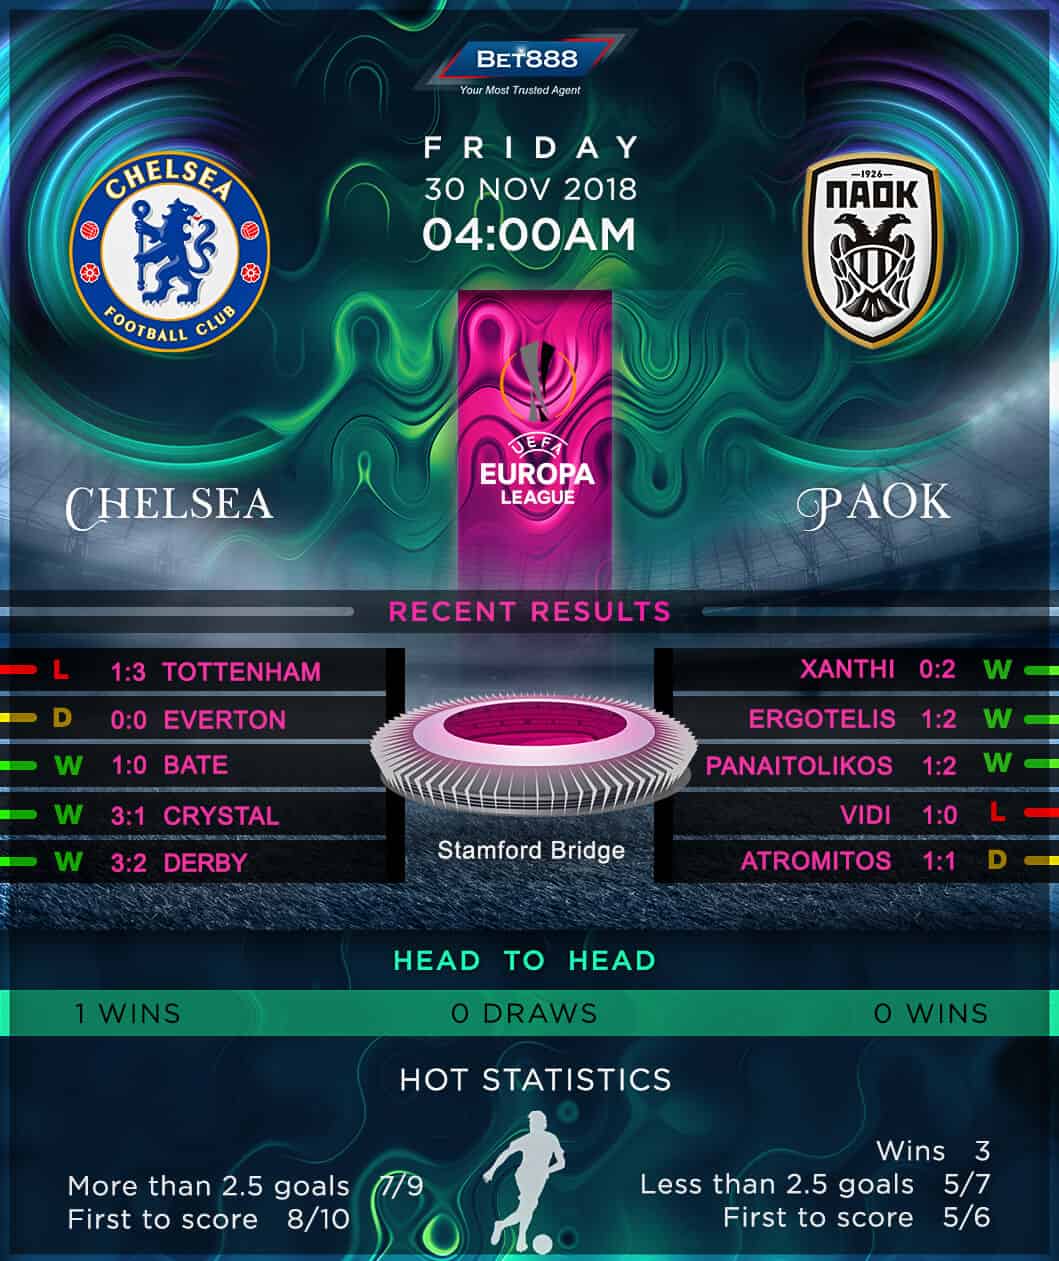 Chelsea vs PAOK 30/11/18